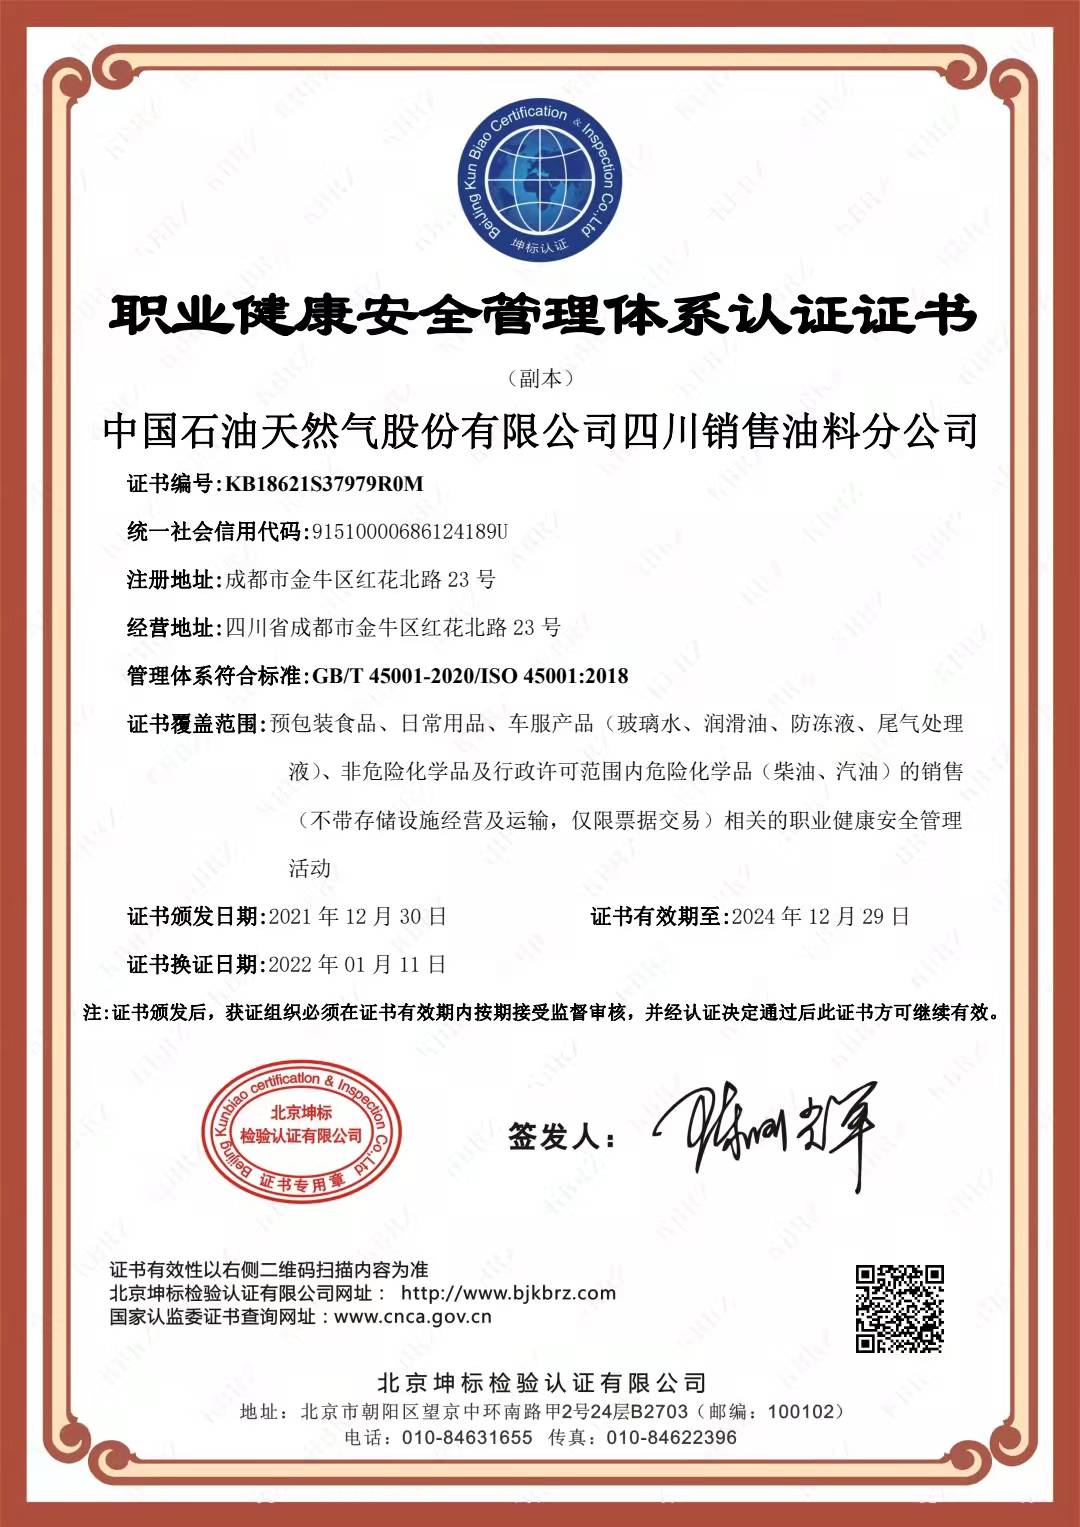 恭喜中国石油 天然气股份有限公司四川销售油料分公司顺利通过审核取得ISO45001,ISO14001,两体系认证证书